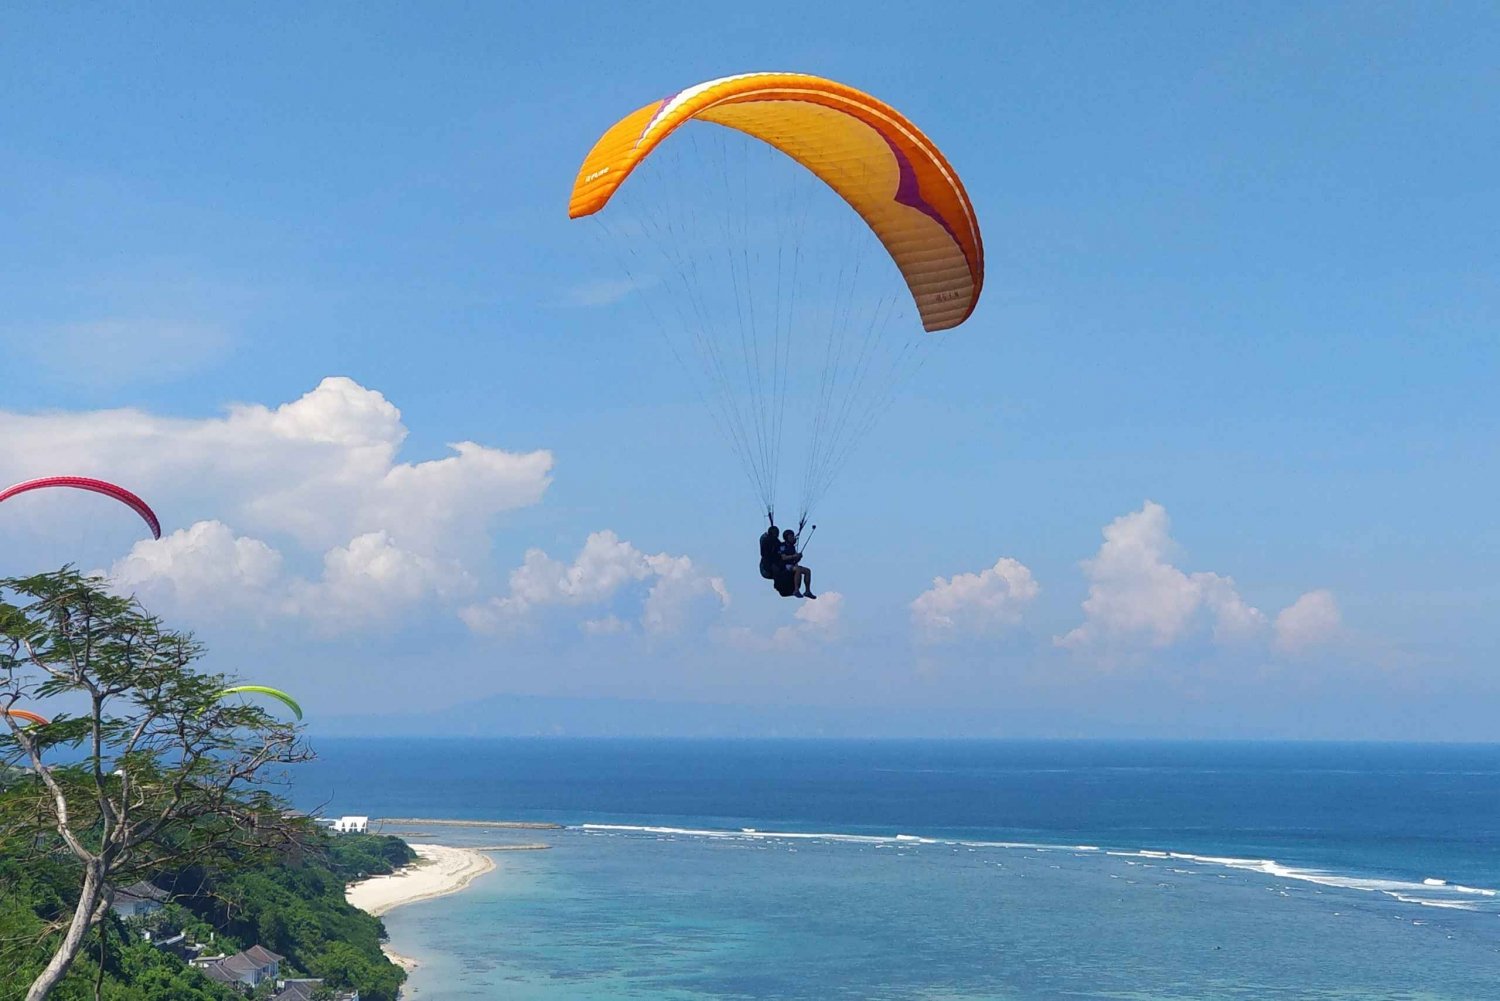 Bali: Uluwatu or Nusa Dua Beach Paragliding Experience